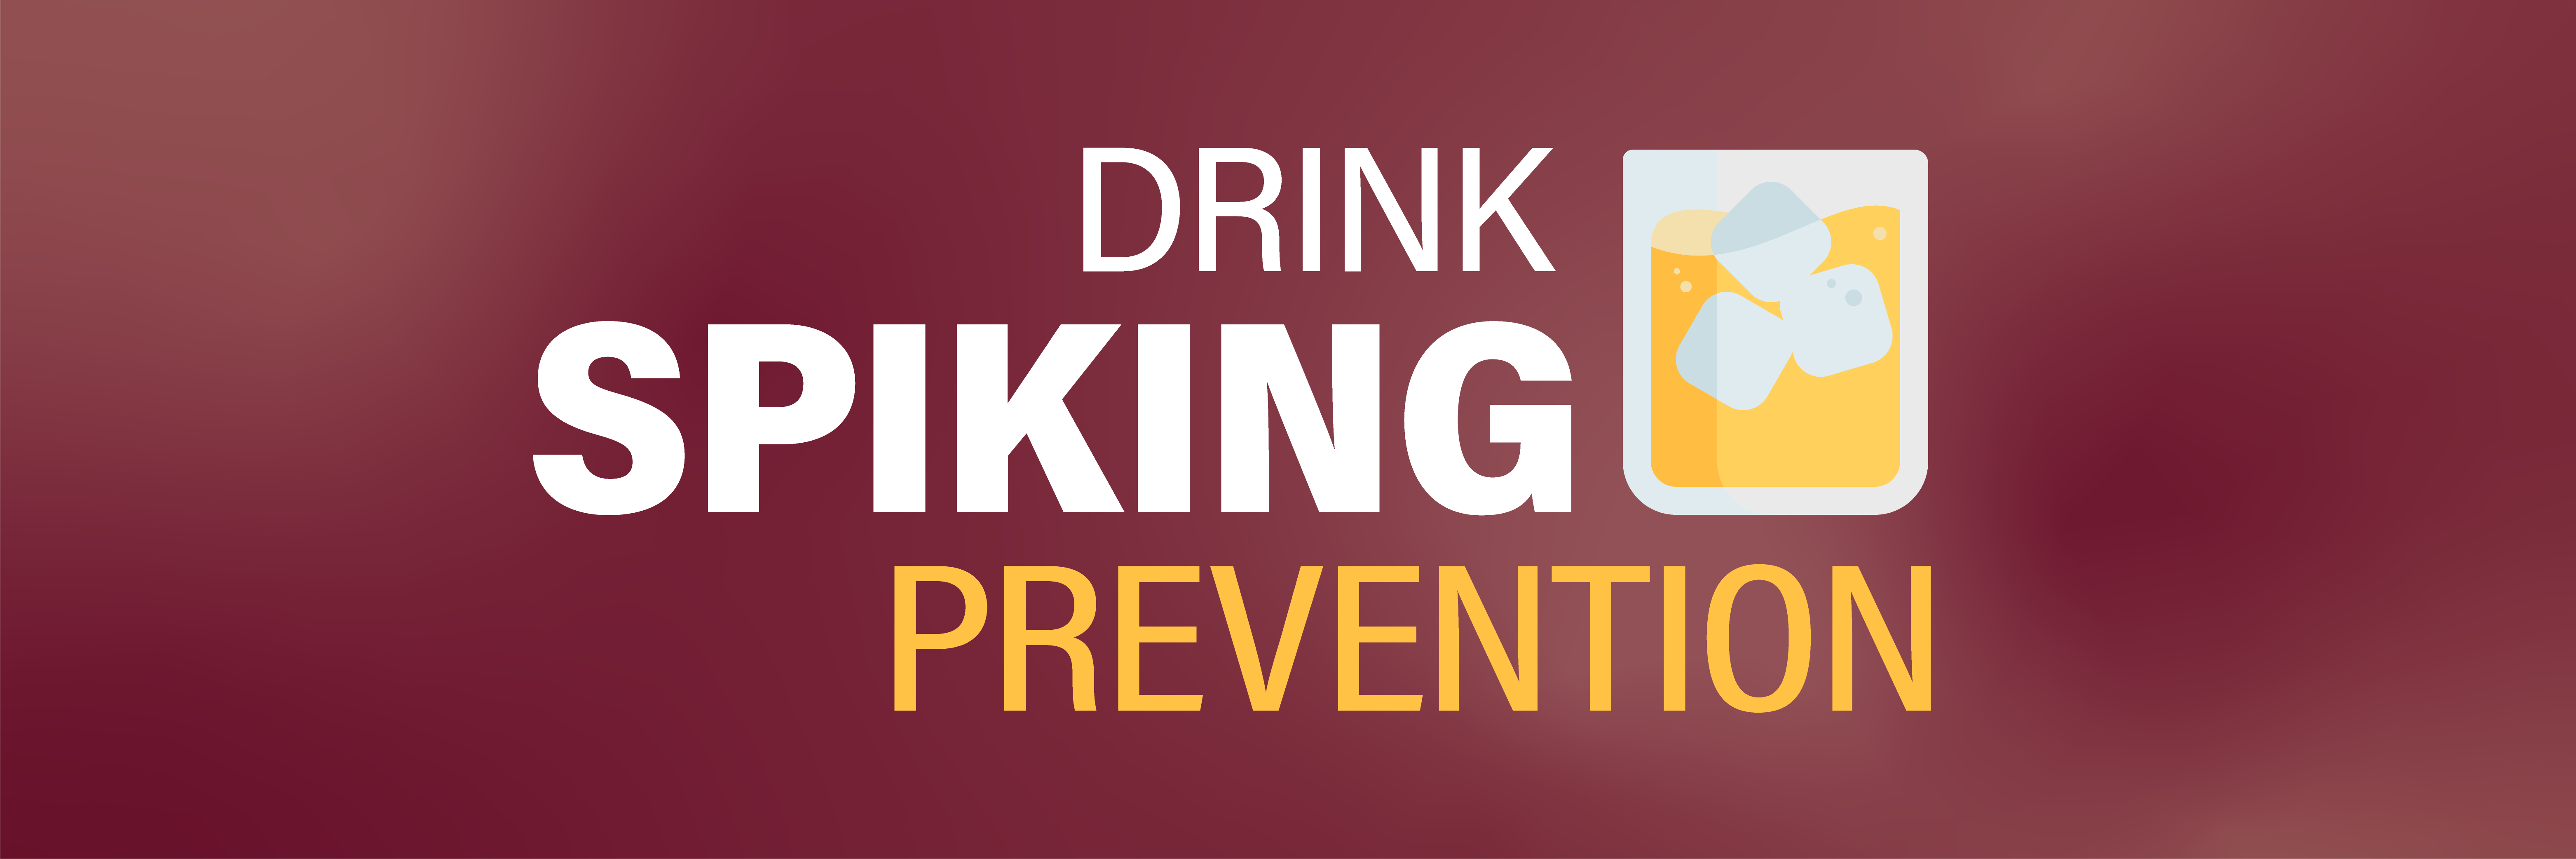 drink spiking prevention header